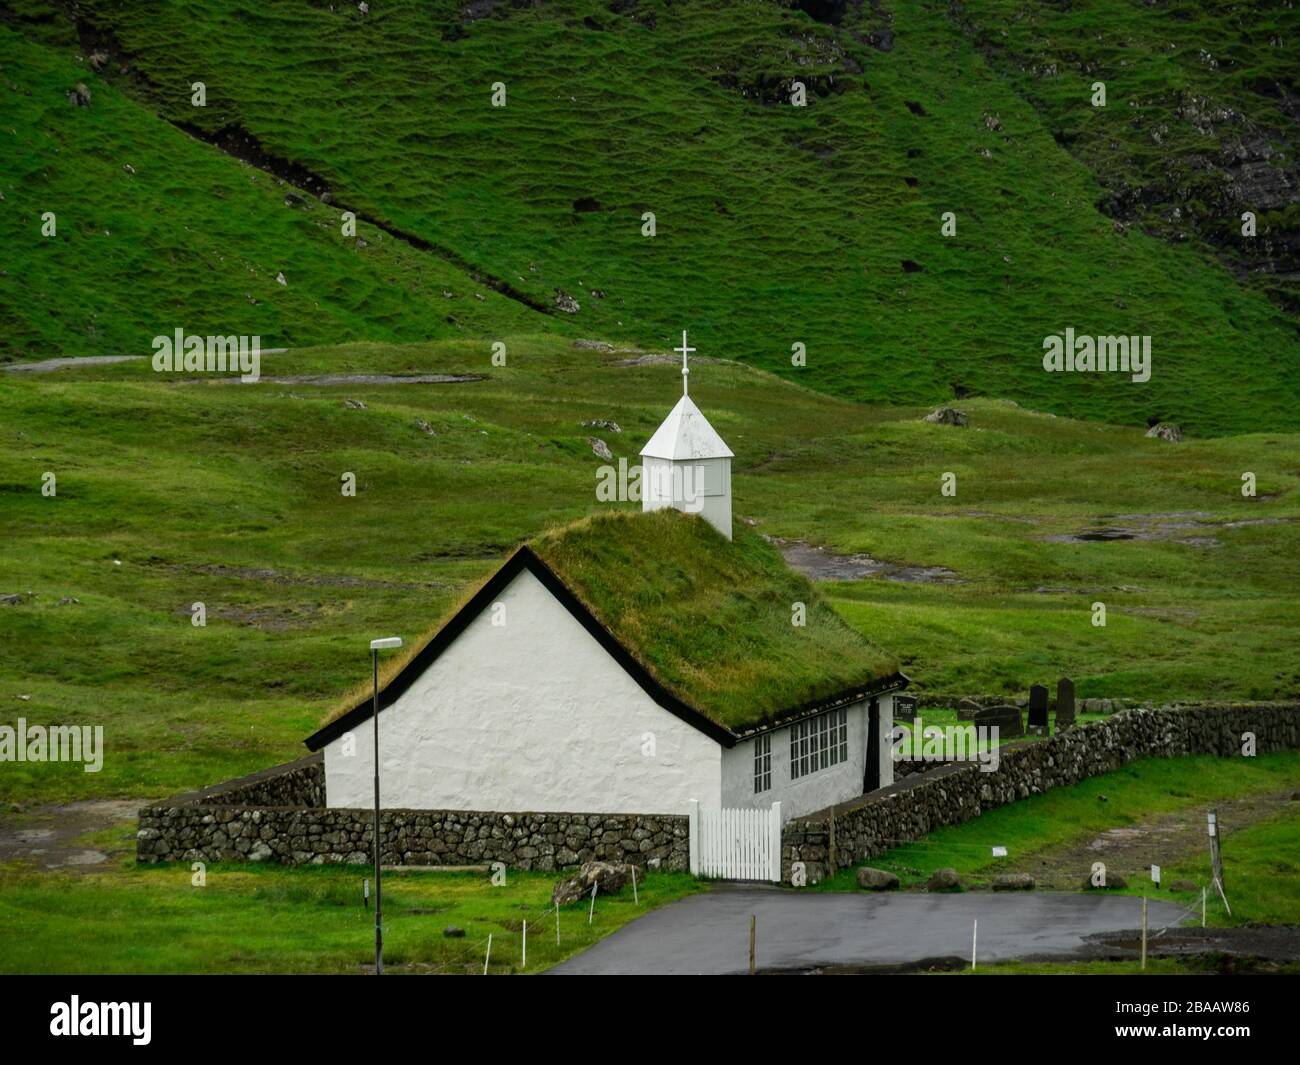 Îles Féroé, Streymoy, Saksun. Vue sur l'église et la vallée de Saksun. Bâtiment blanc avec toit en herbe debout hors des champs verts. Banque D'Images